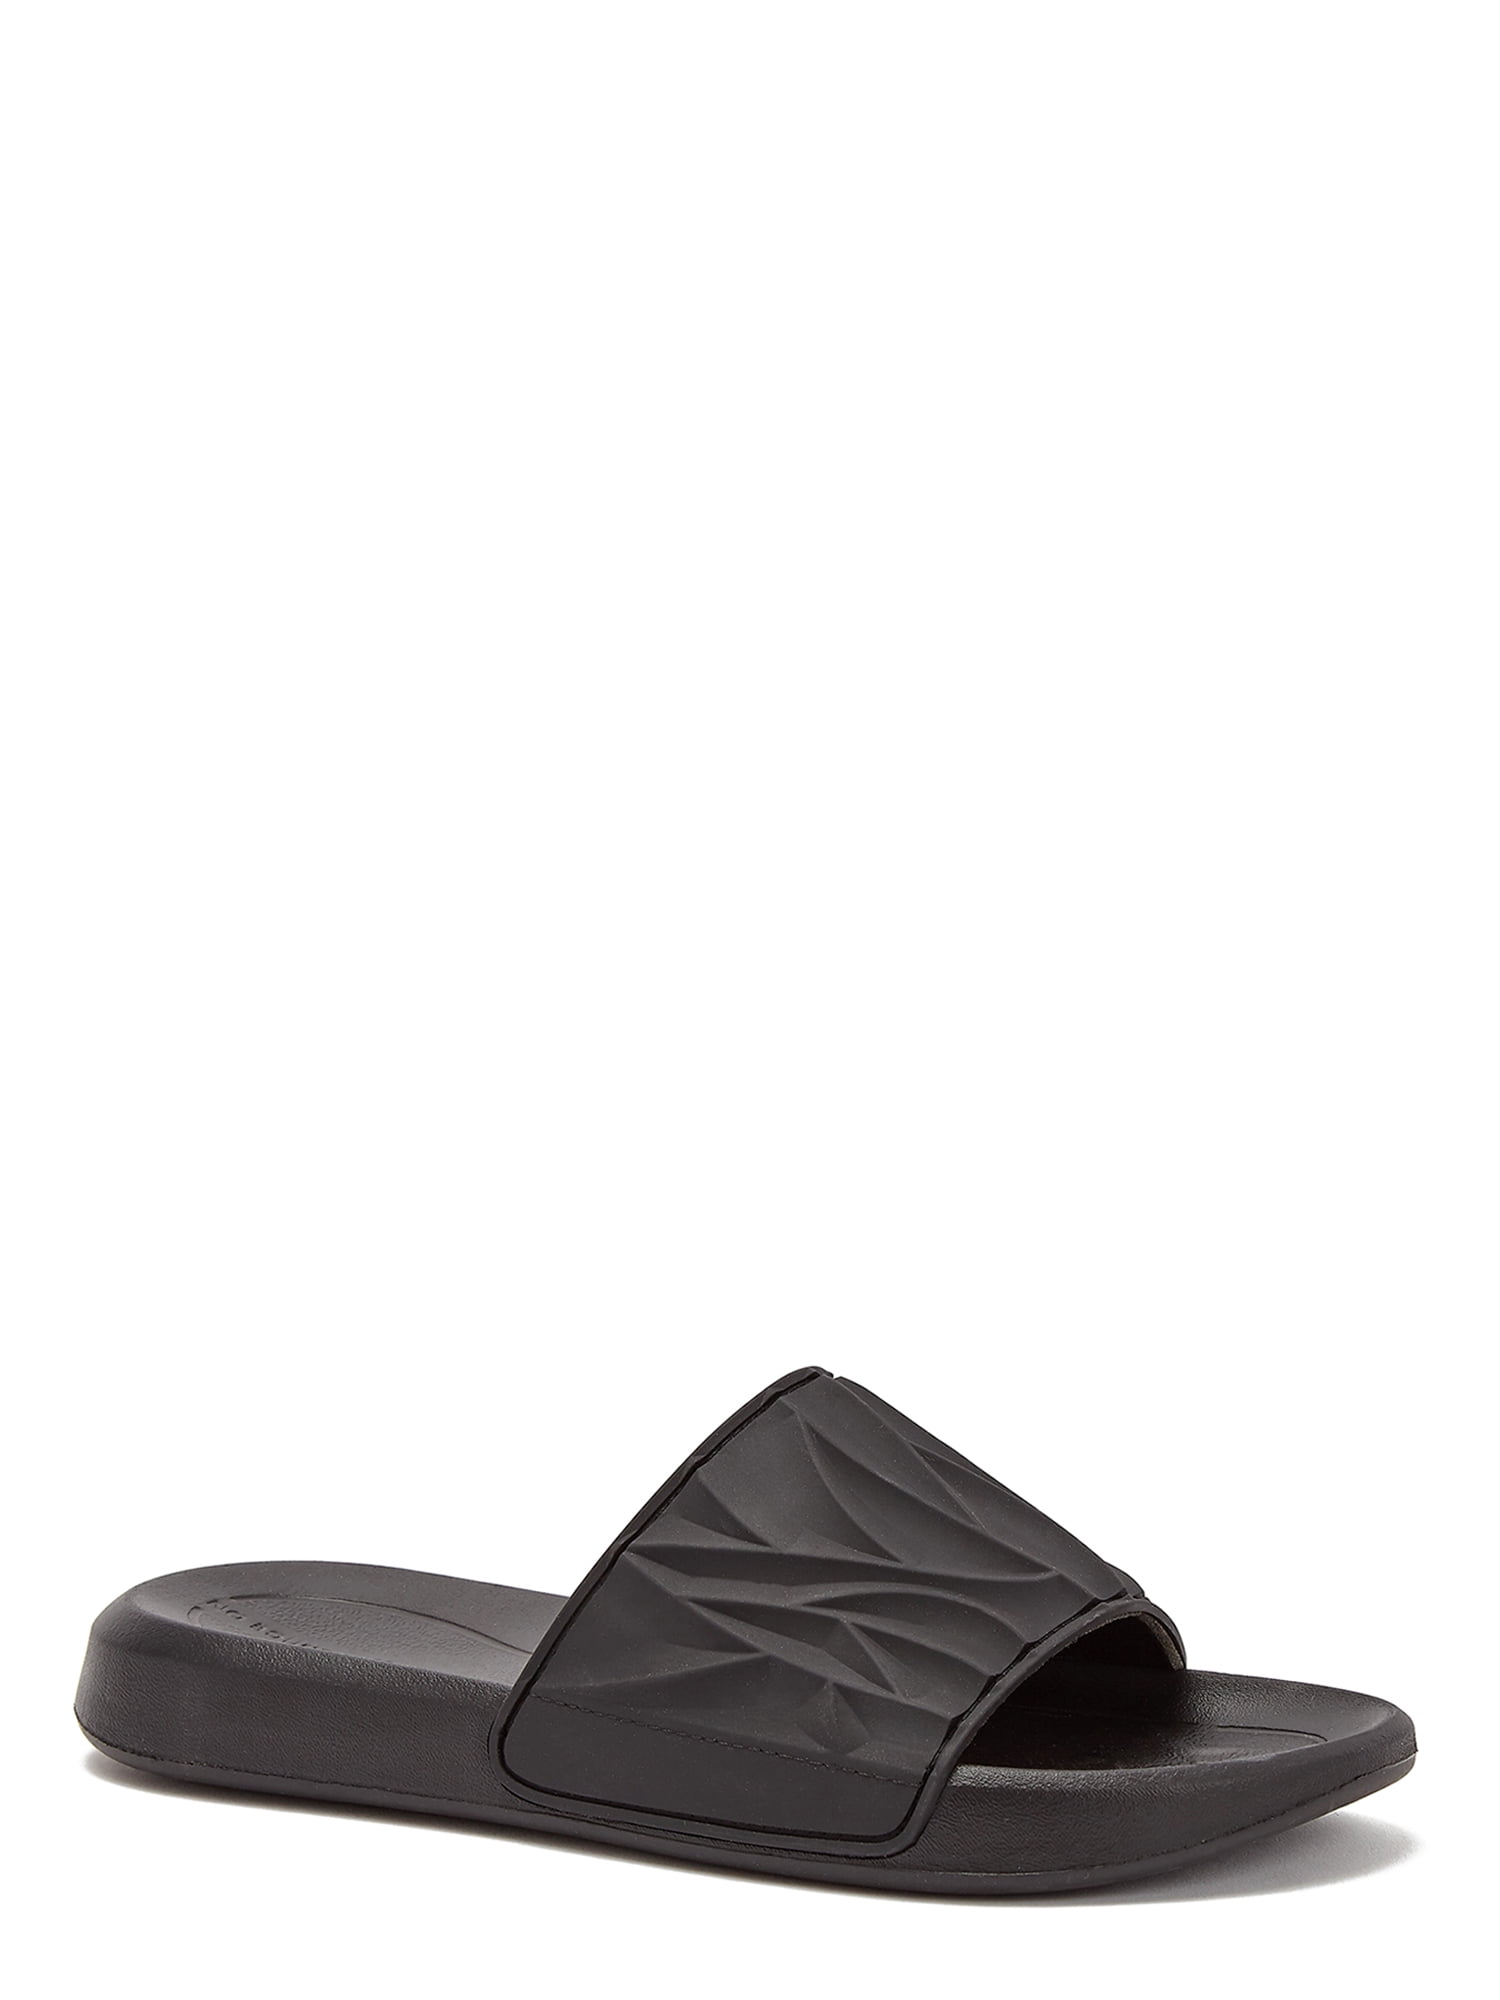 No Boundaries Men's Molded Texture Slide Sandals - Walmart.com